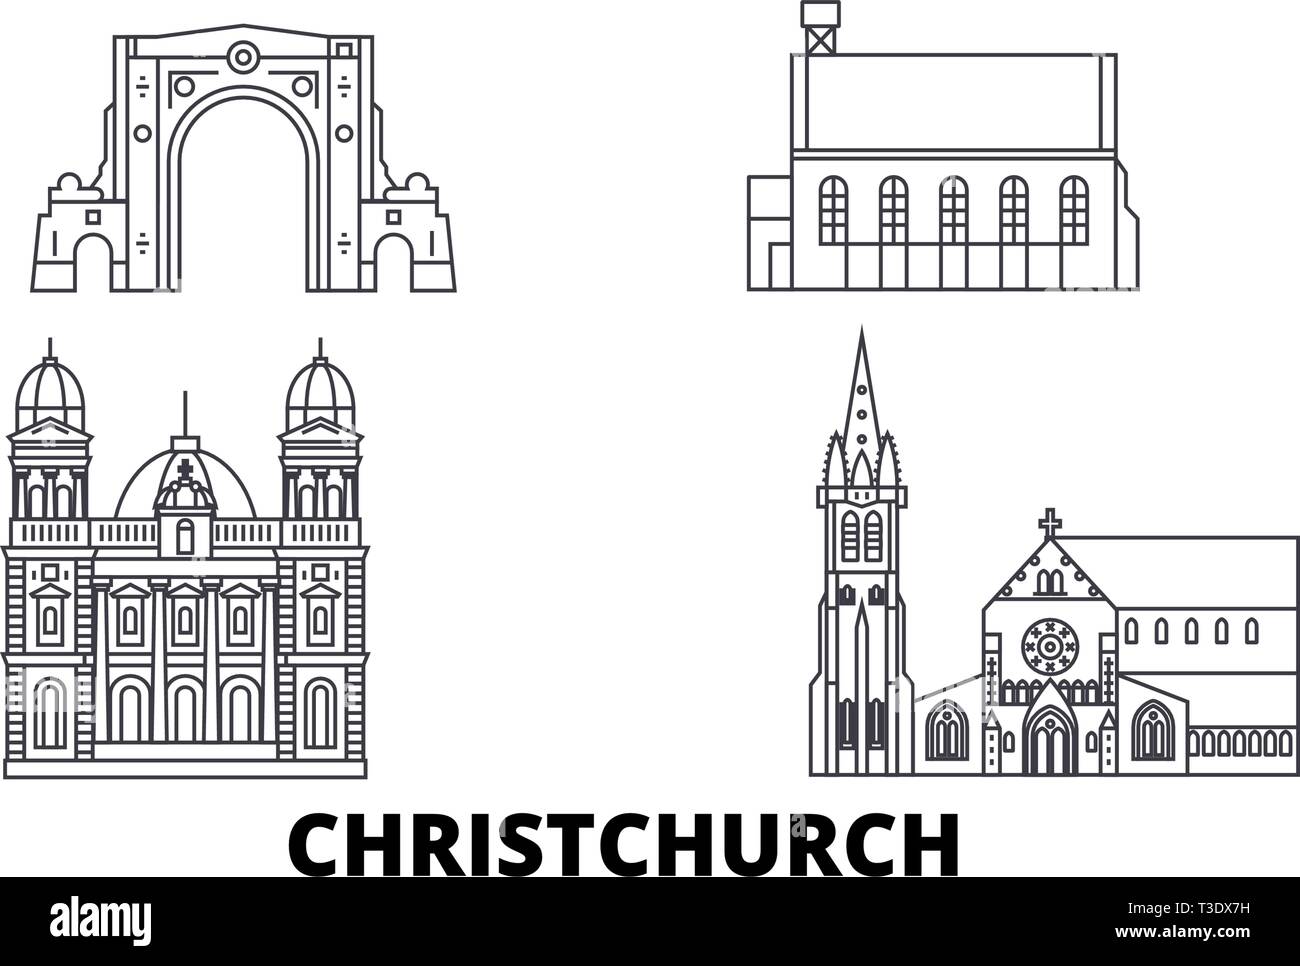 Nuova Zelanda Christchurch linea skyline di viaggio set. Nuova Zelanda Christchurch città outline illustrazione vettoriale, simbolo, siti di viaggi, punti di riferimento. Illustrazione Vettoriale